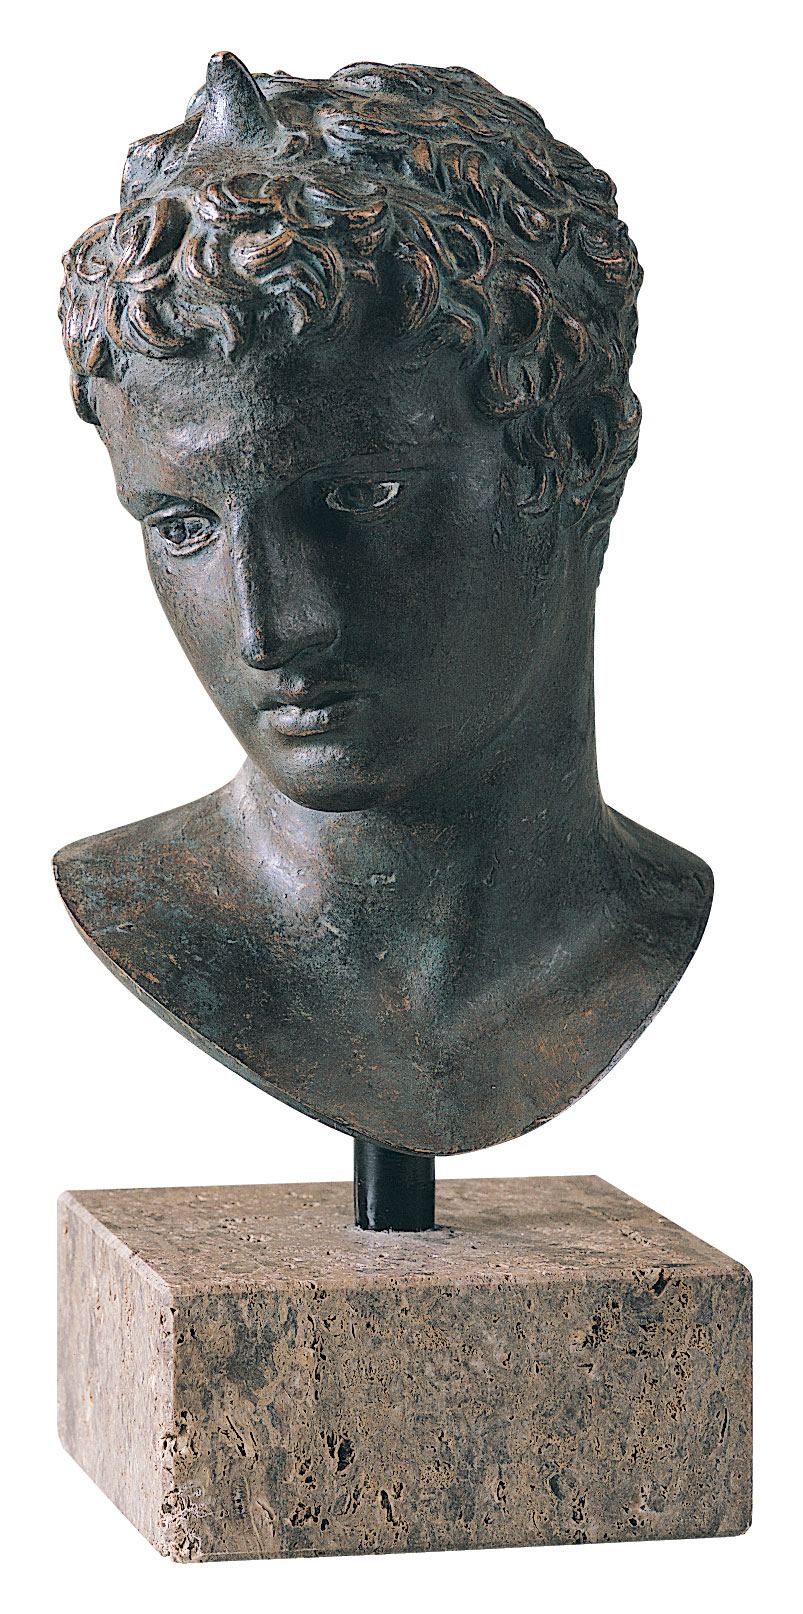 Praxiteles: Kopf des Epheben von Marathon, Kunstbronze, Skulptur